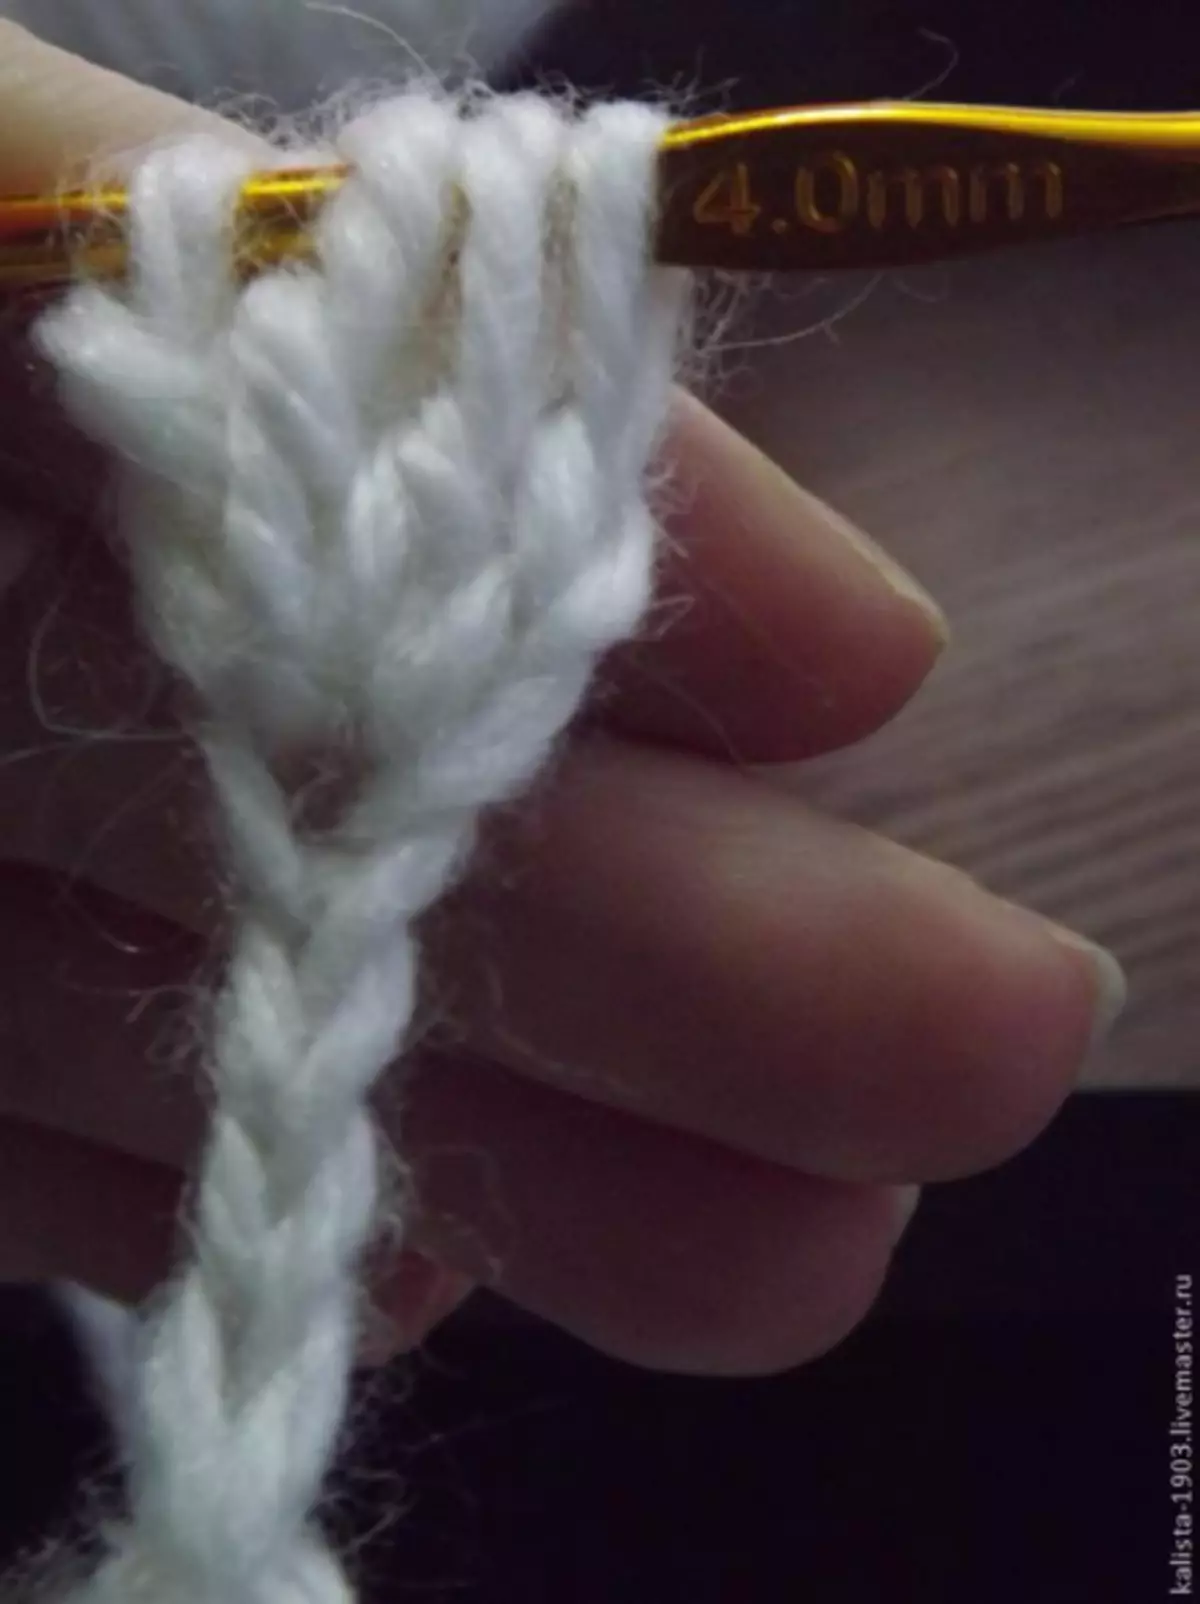 Baby crochet cho người mới bắt đầu: Đề án với video